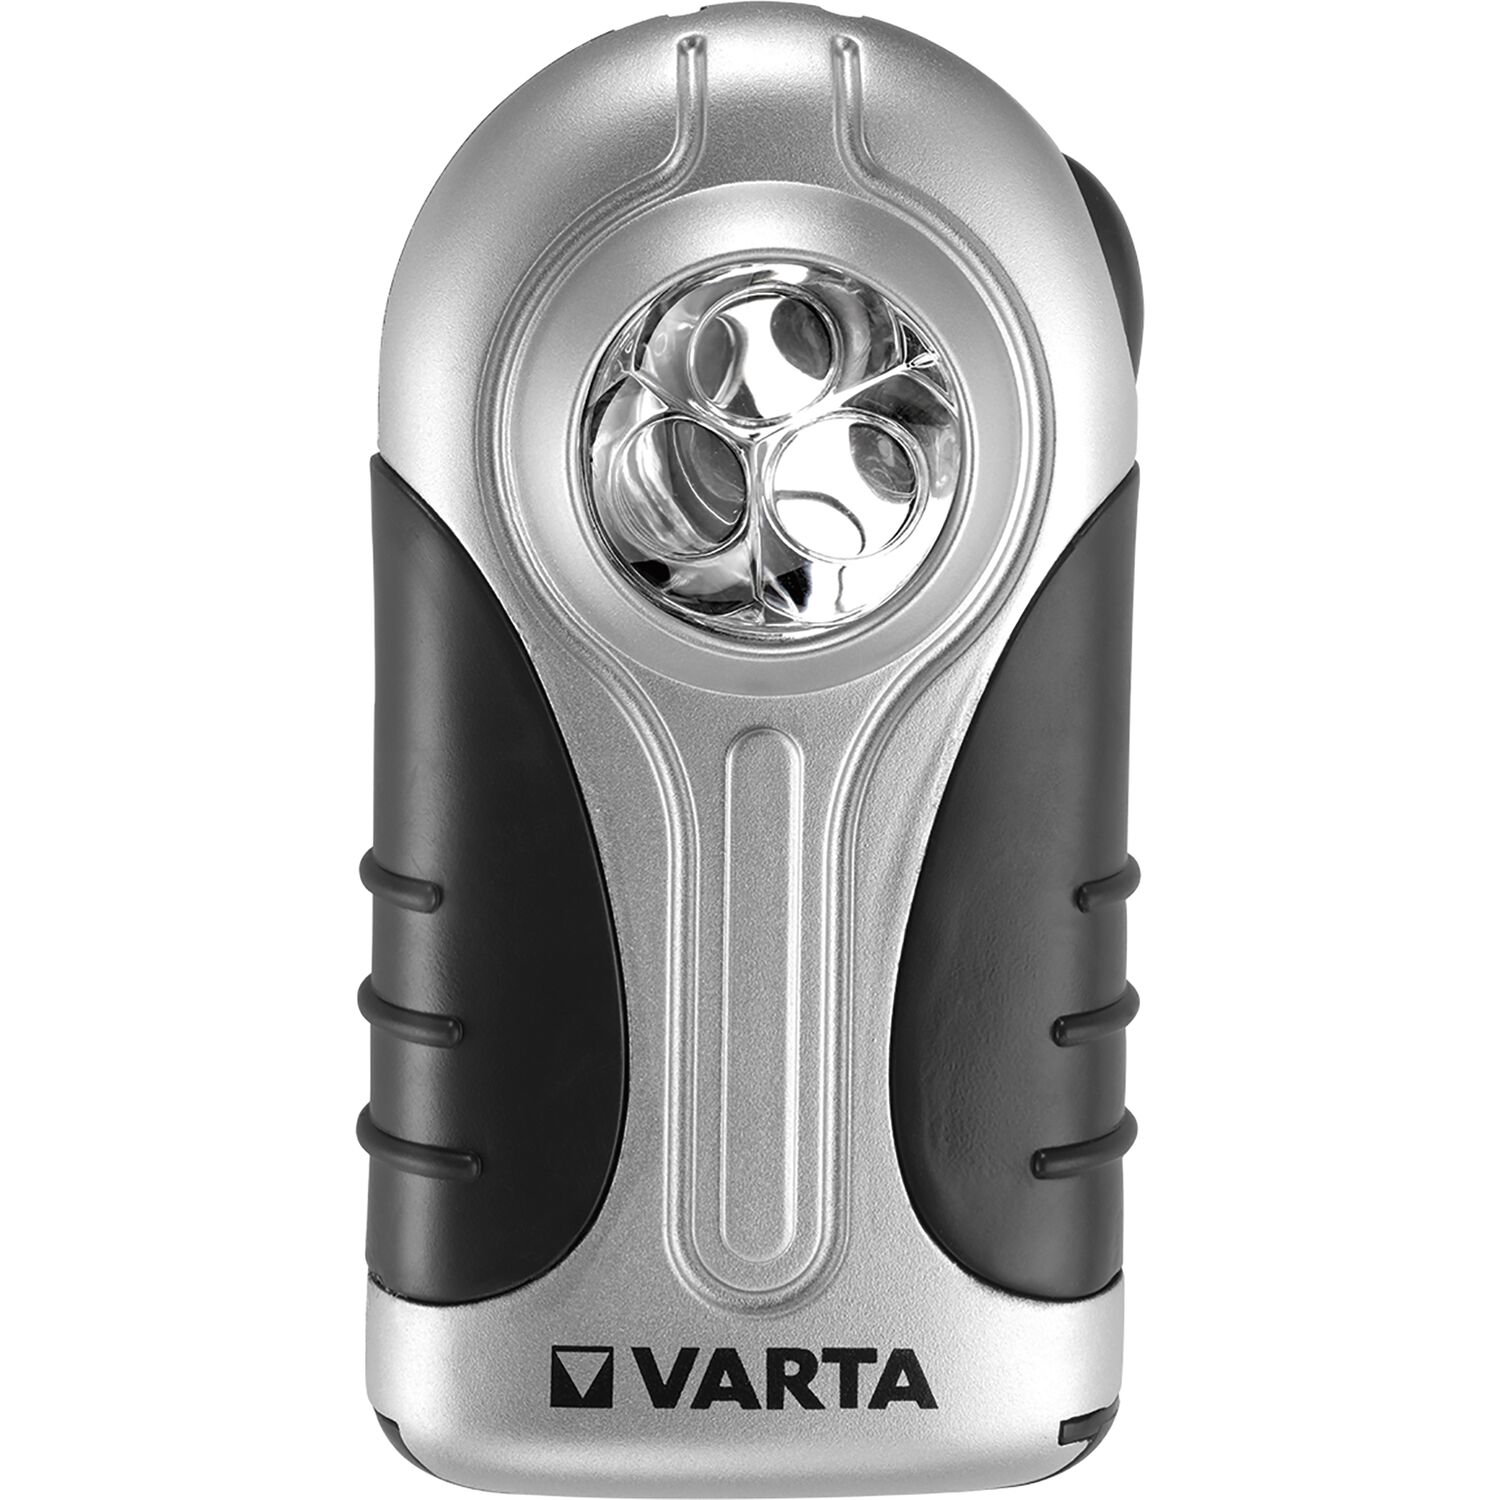 Varta Halteclip (Flachleuchte) und vasalat Taschenlampe Silver mit 3x - Batterien LED